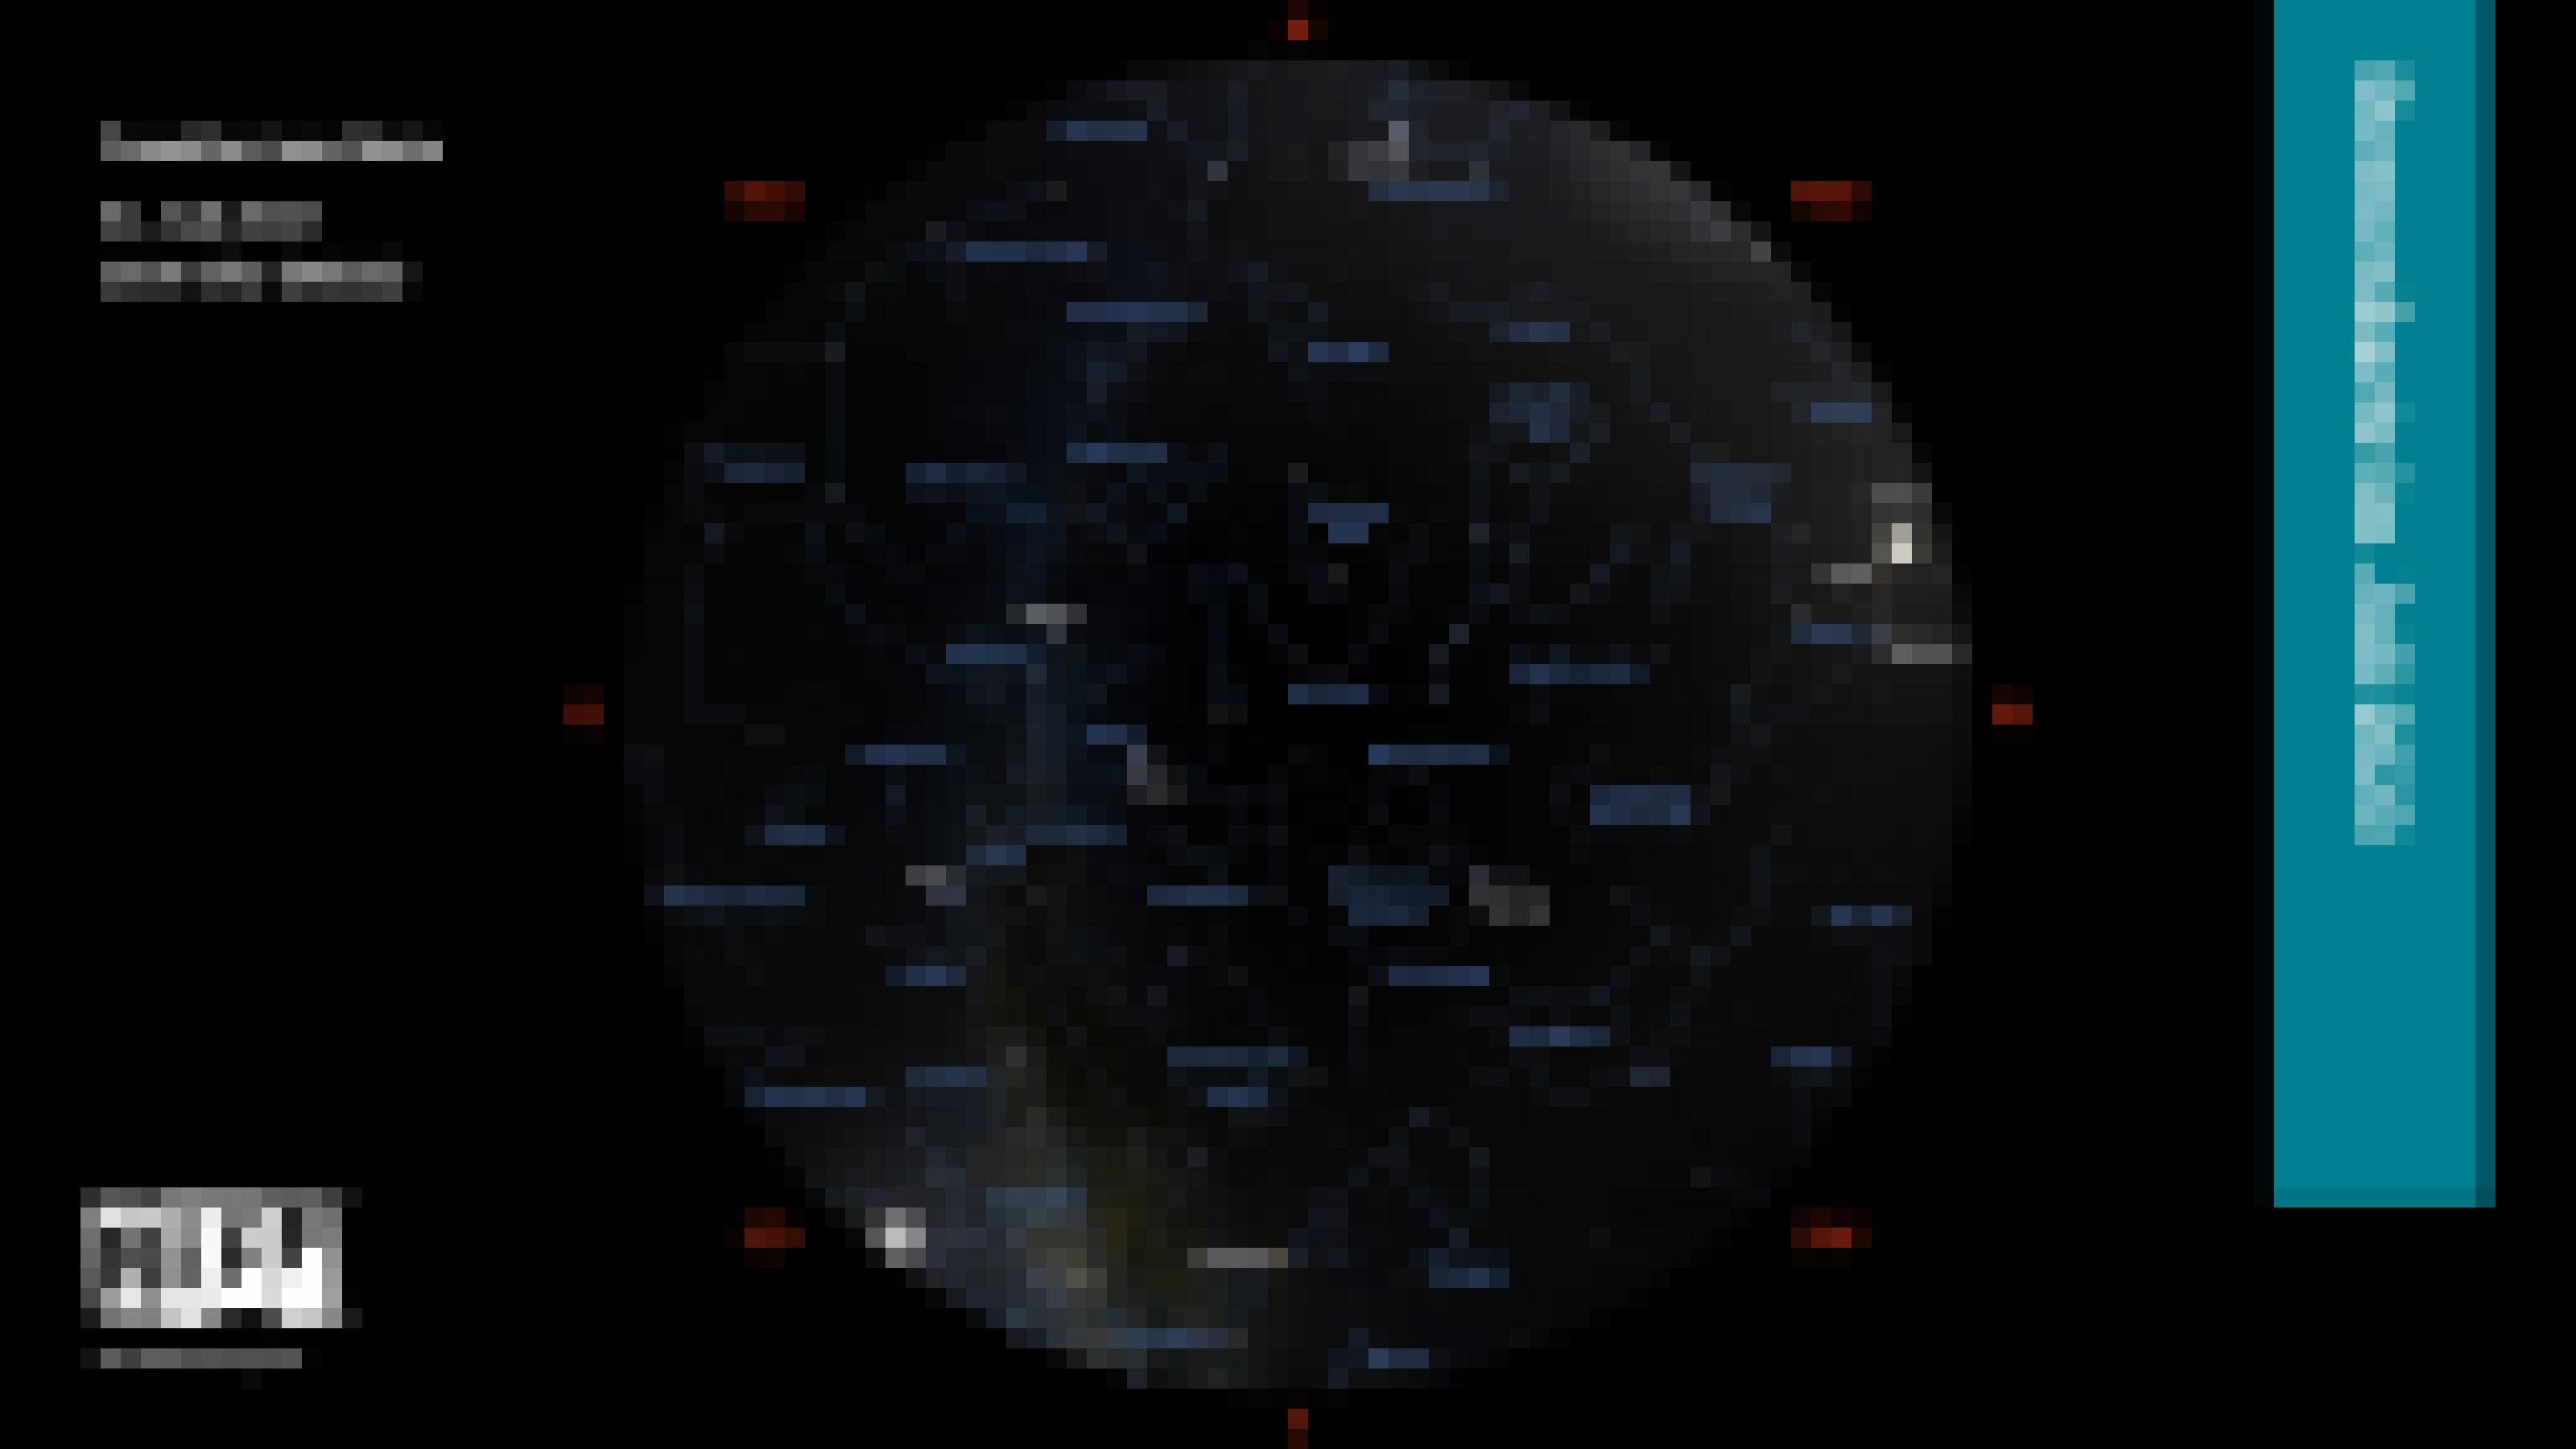 Die Himmelskarte zeigt die Positionen von Sternen und Planeten für Anfang Julie 2023 um 23:00 Uhr für den Standort Frankfurt am Main.